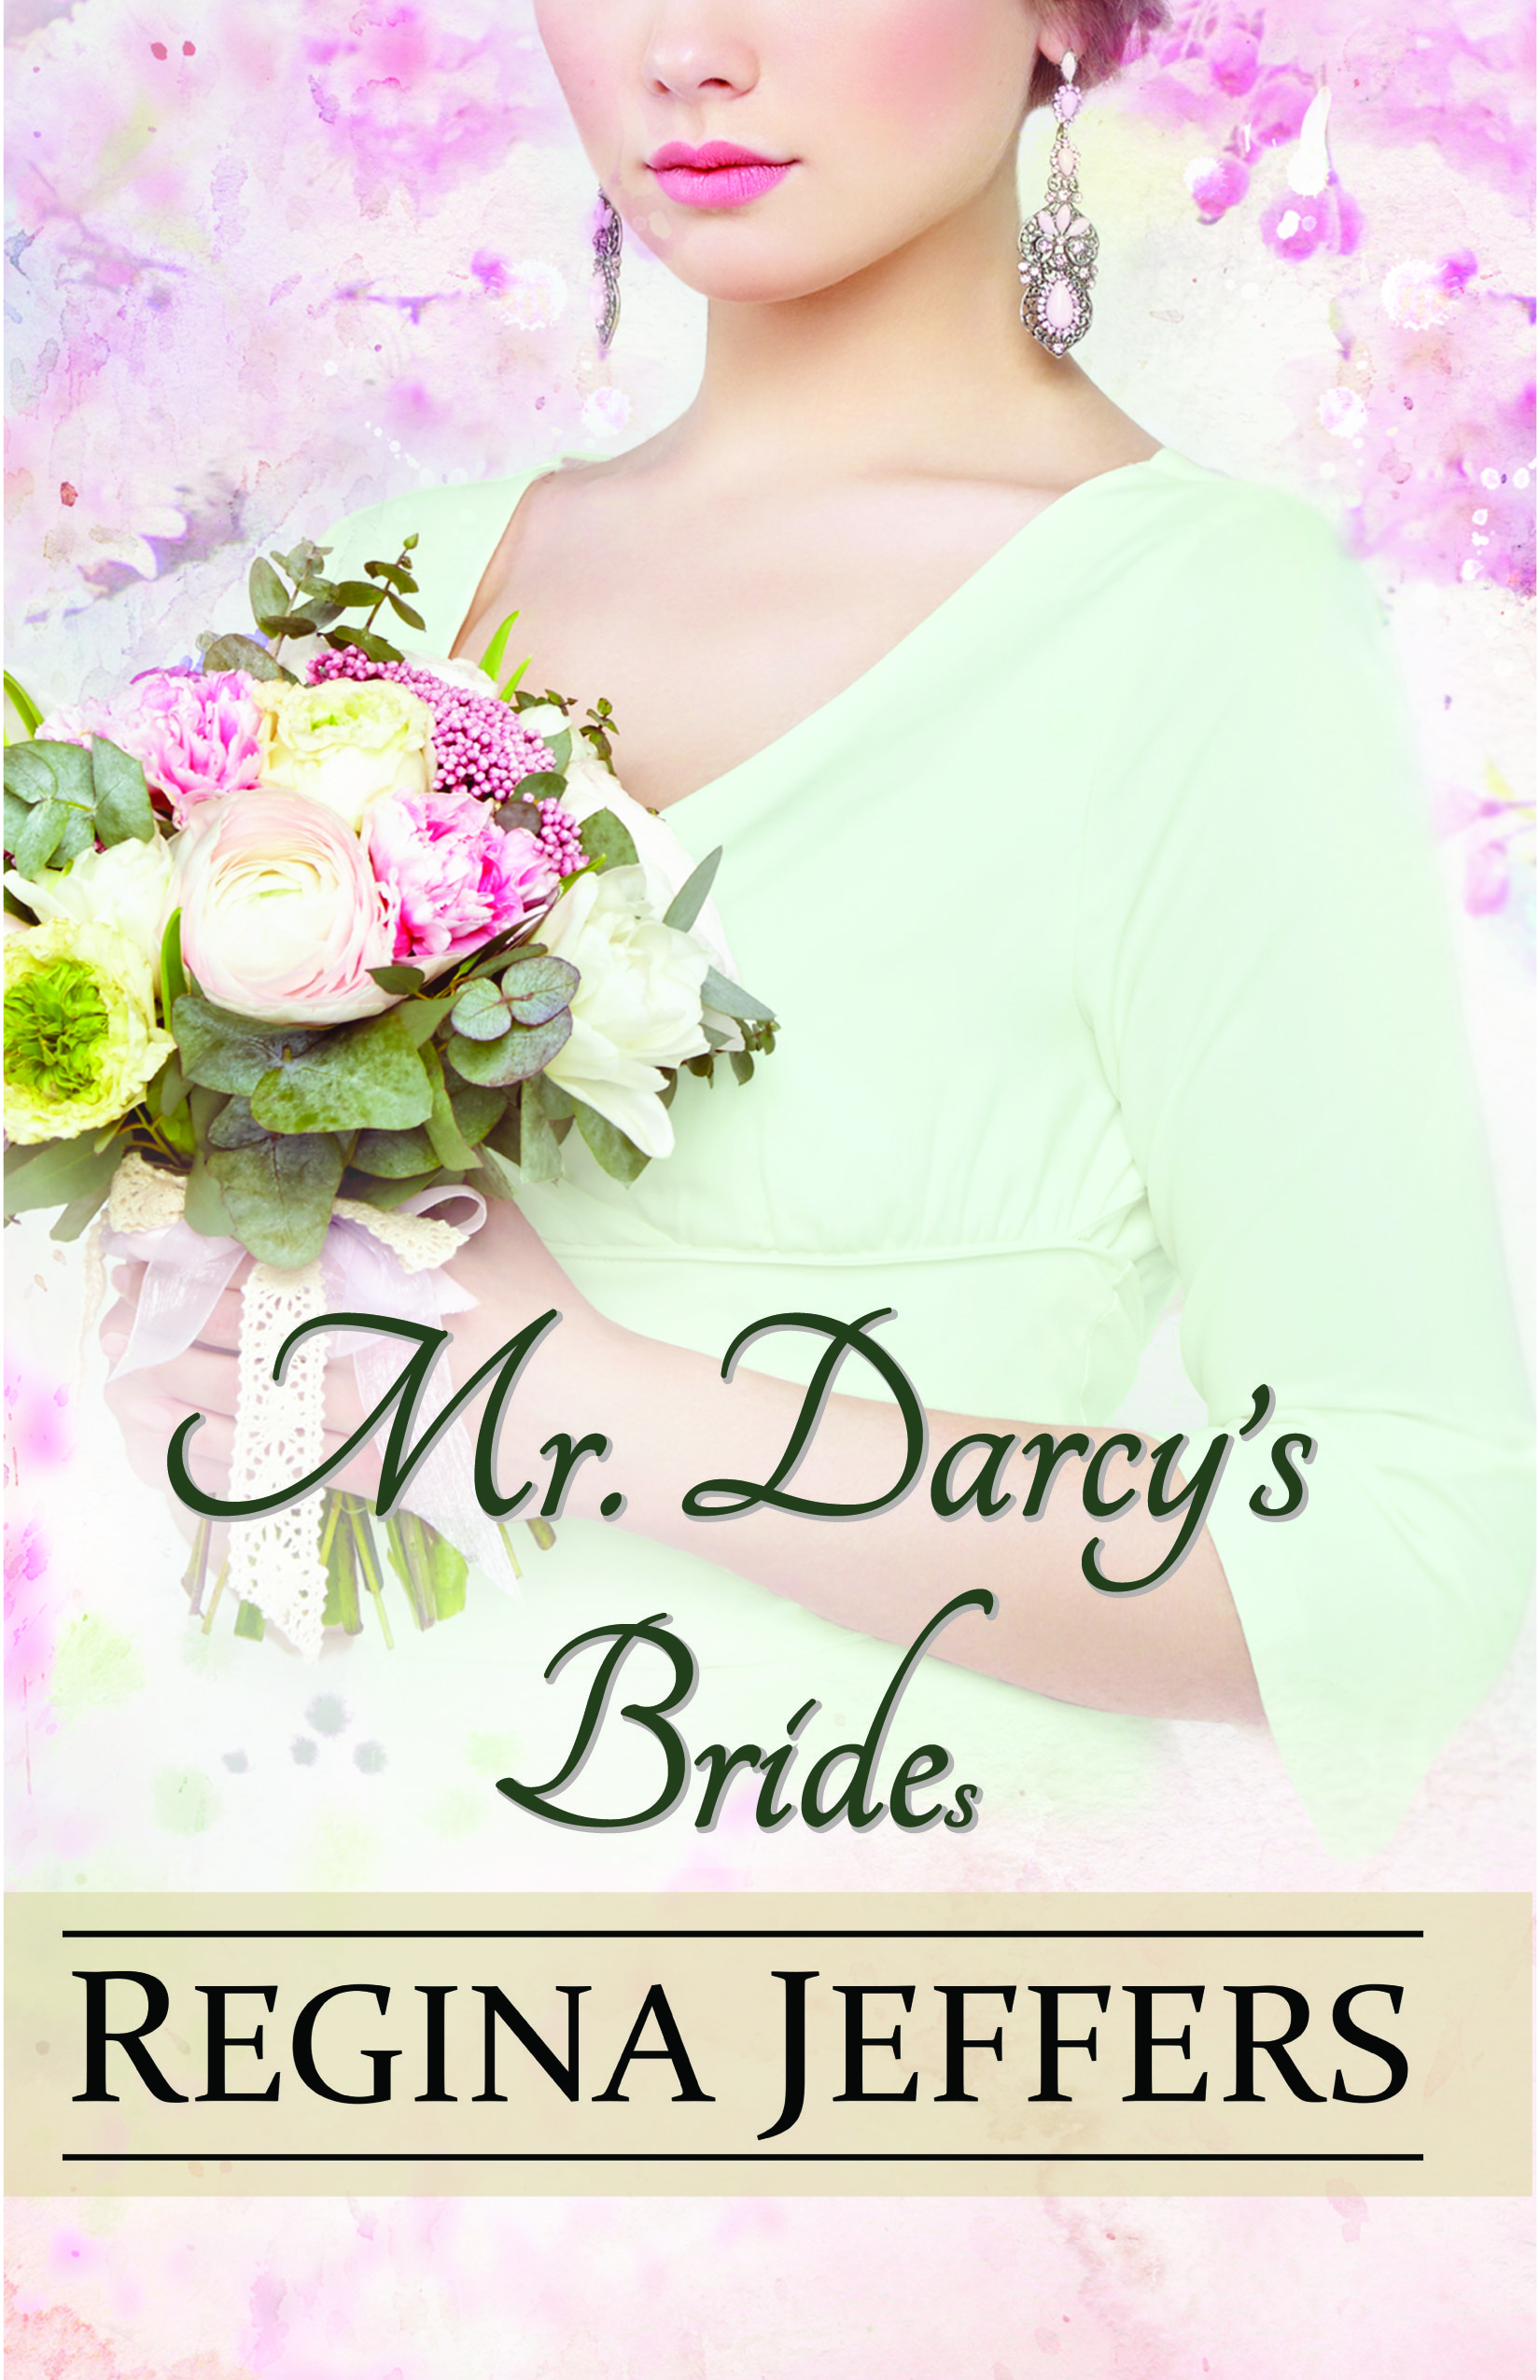 Happy Sixth Book Birthday to “Mr. Darcy’s Bride(s)”